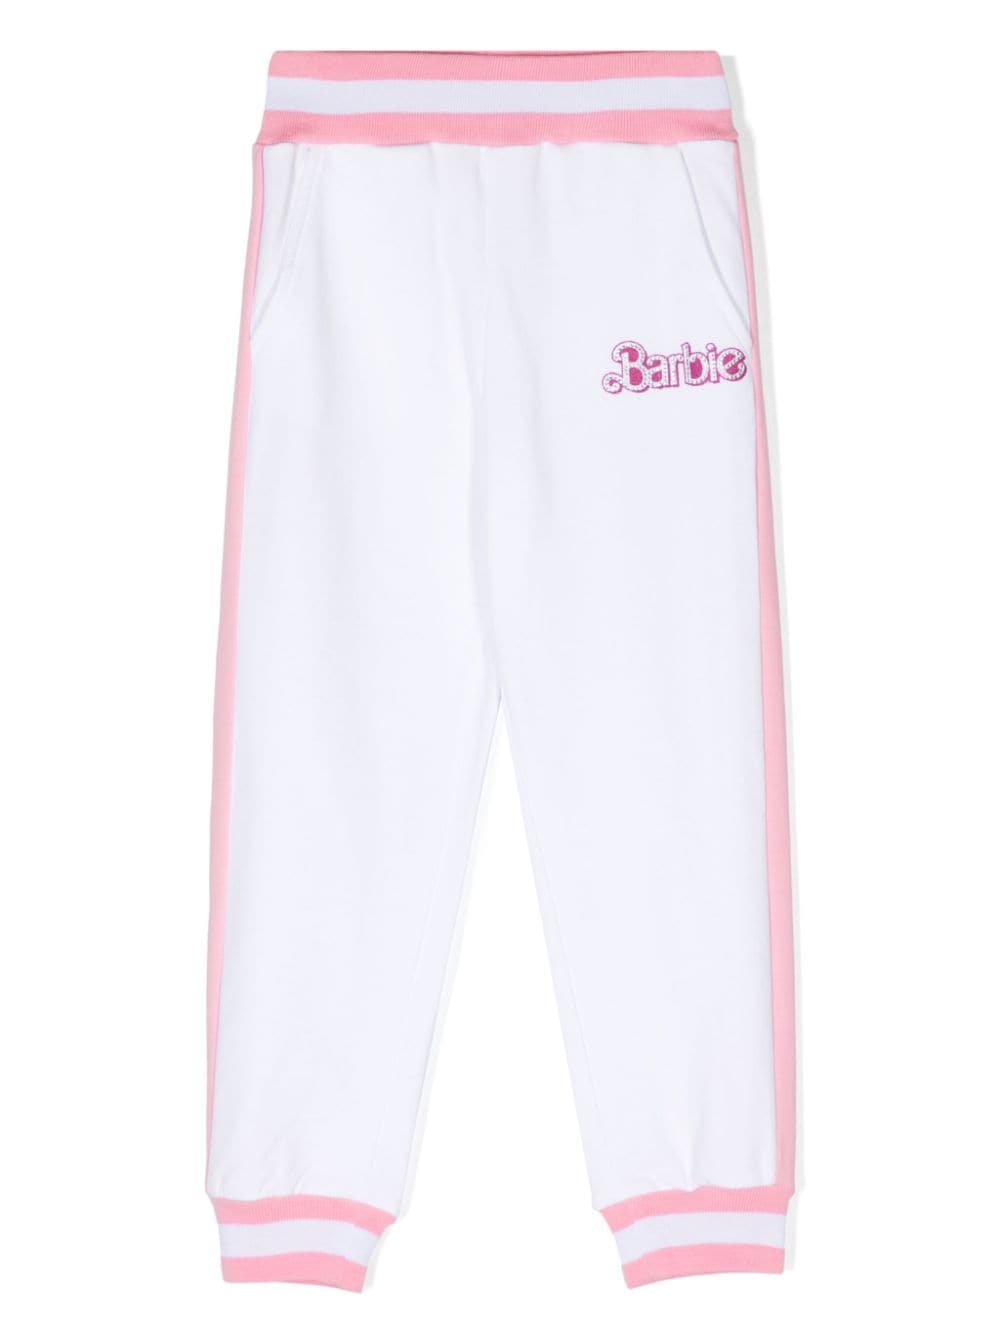 Pantaloni bambina bianchi/rosa